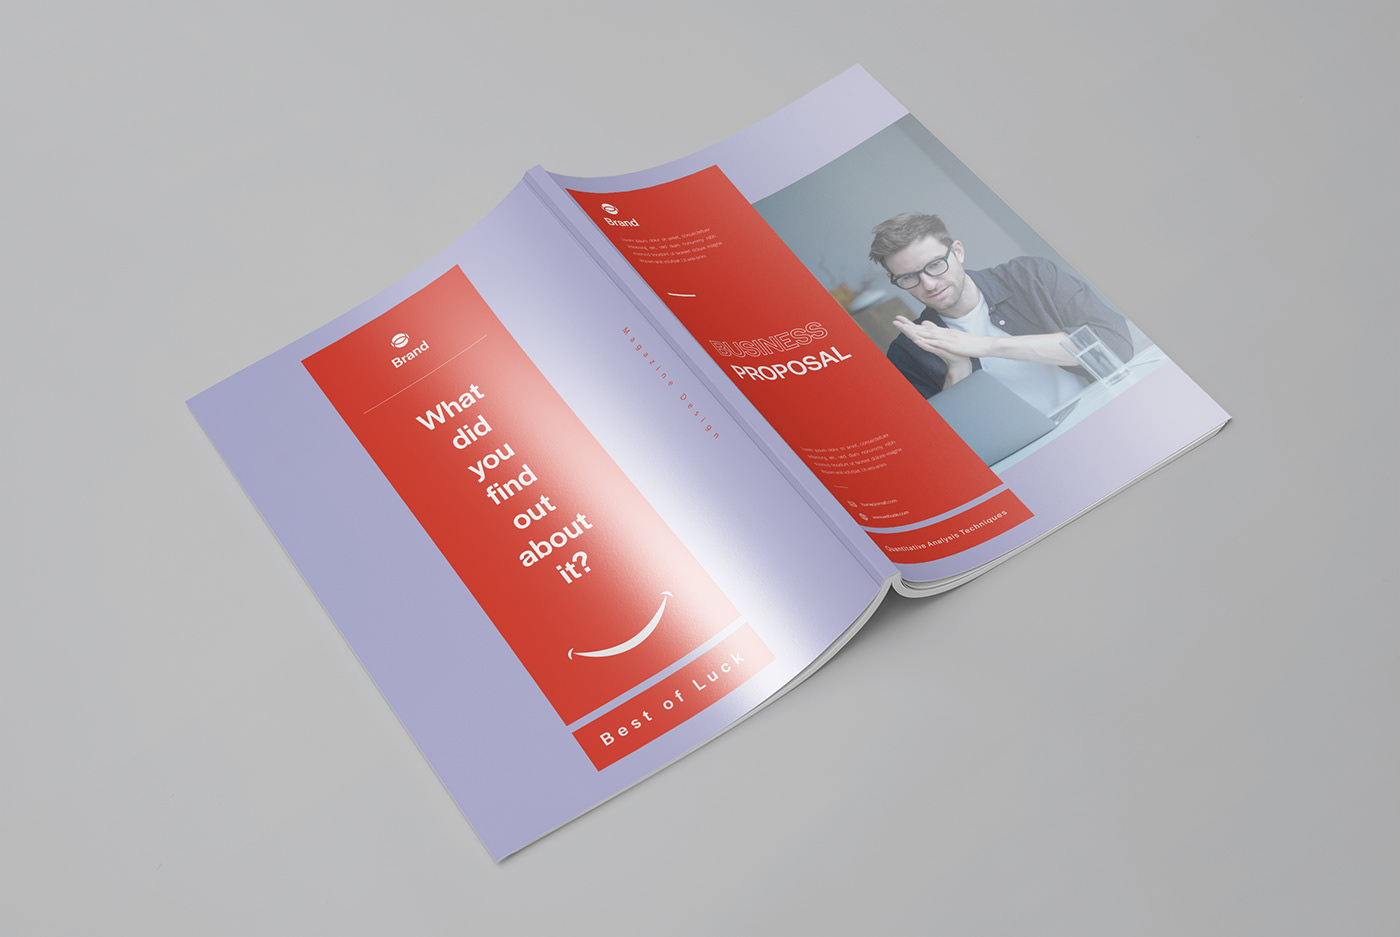 annual report book cover book design booklet design brand identity brochure design Business Proposal company profile Designhatt Magazine design